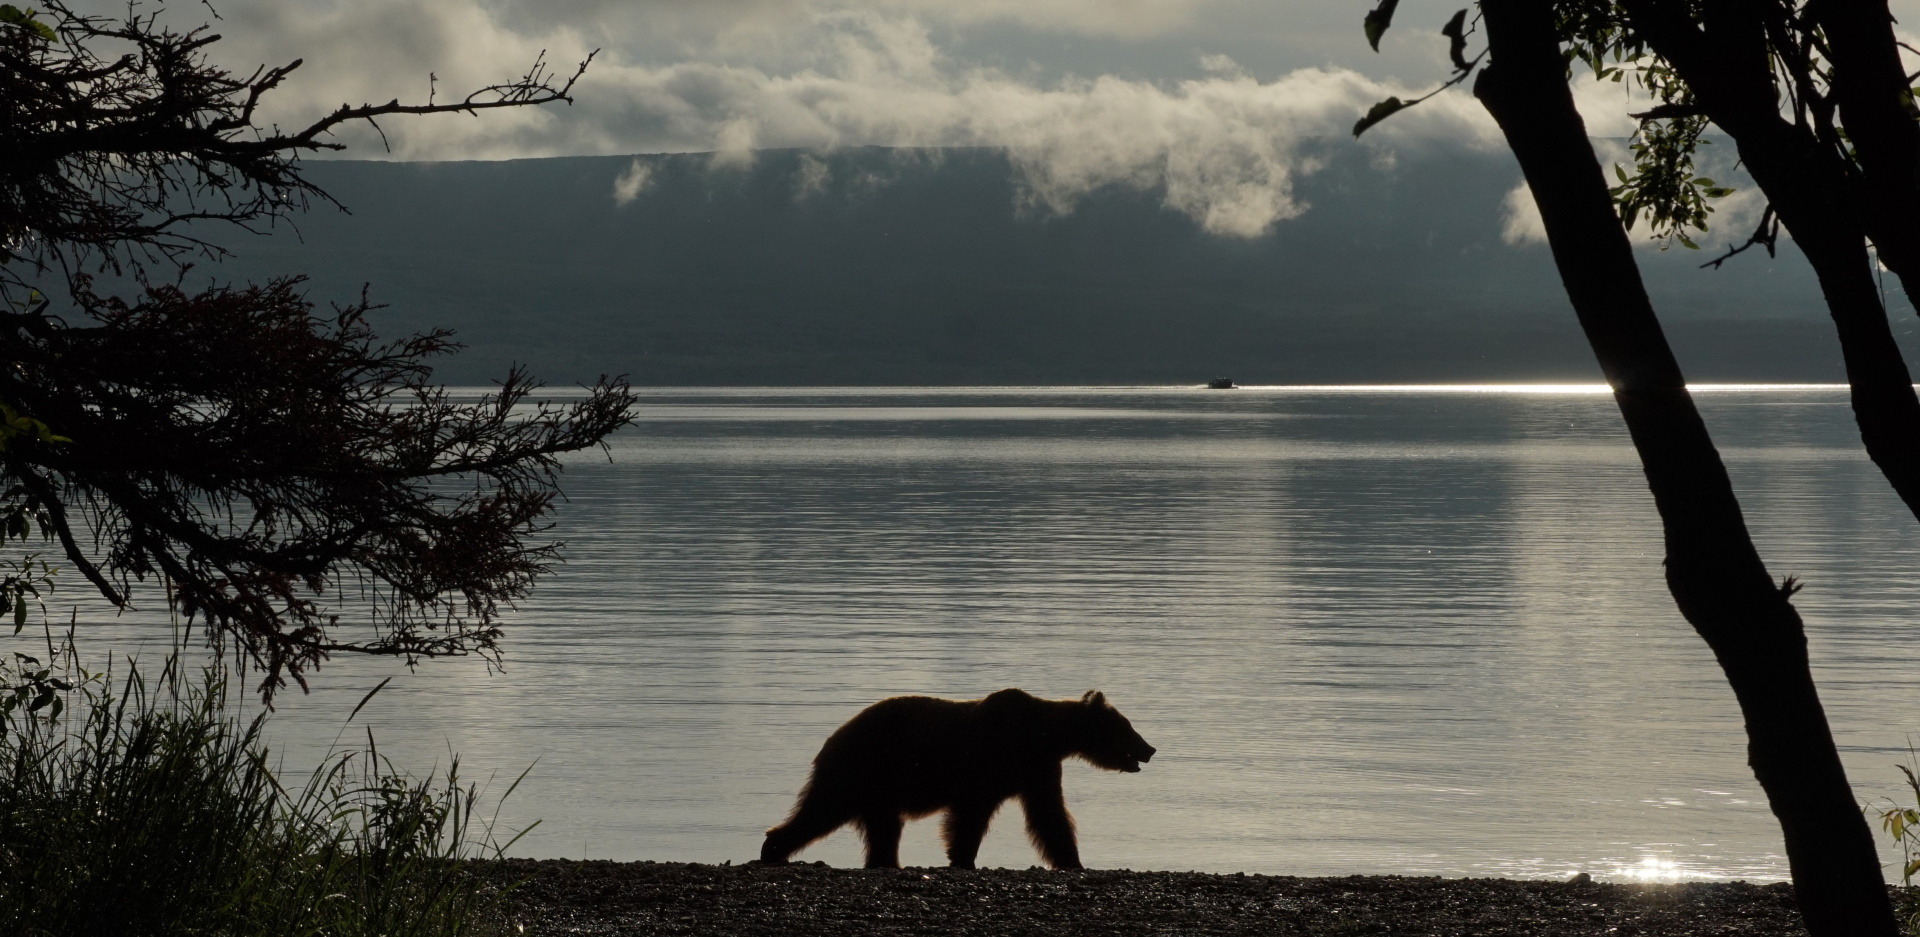 Κατμάι: Το παρθένο βασίλειο της «παχιάς αρκούδας»  